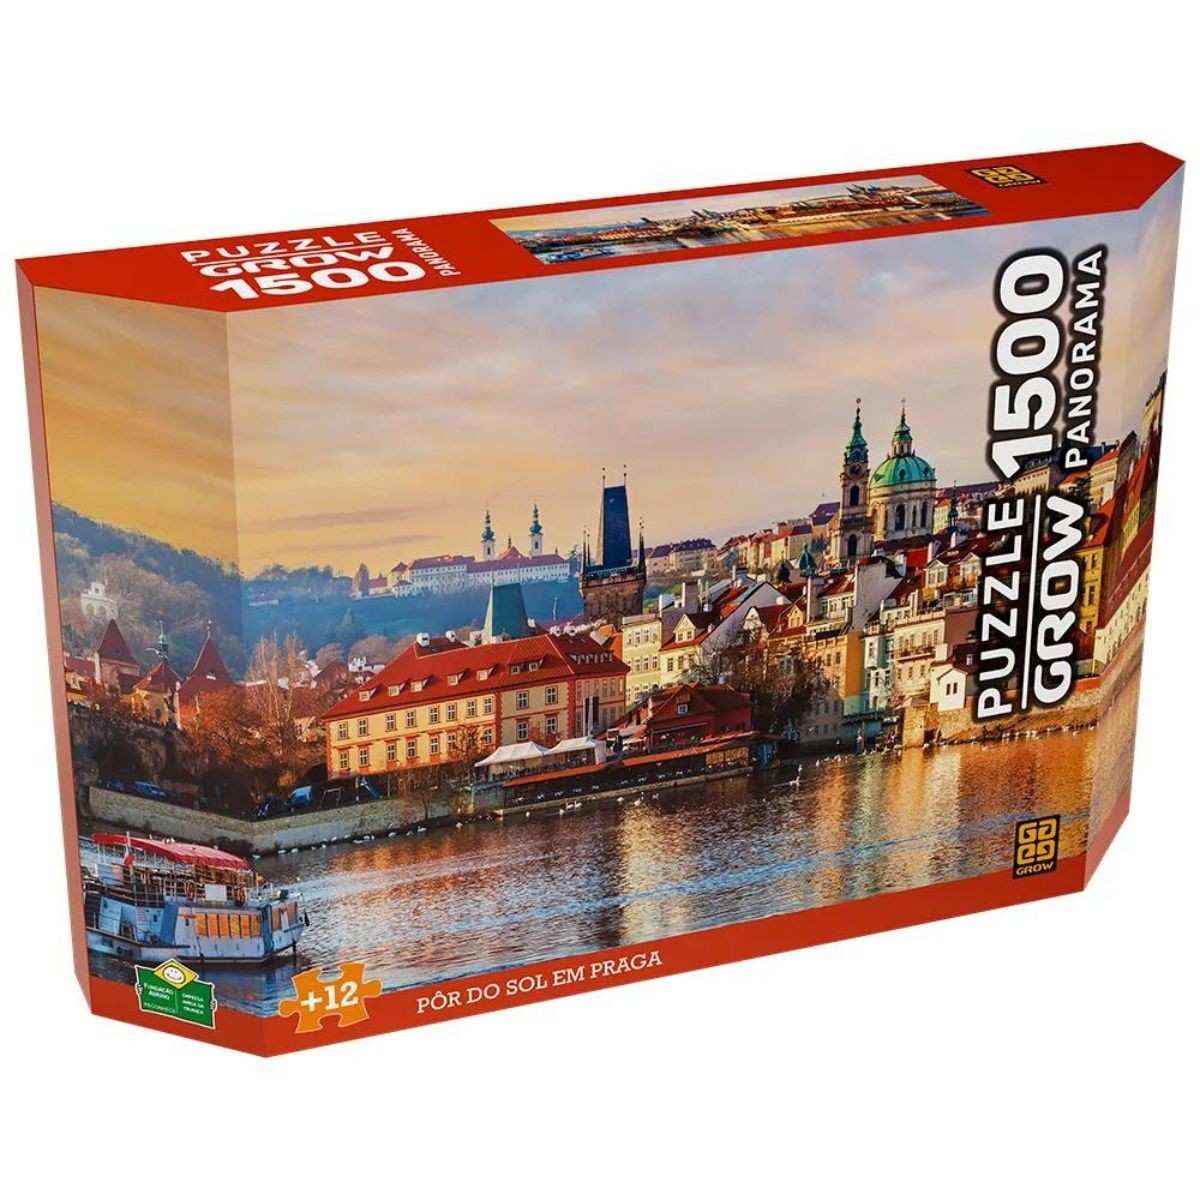 Puzzle 1500 peças Panorama Pôr do sol em Praga - Grow